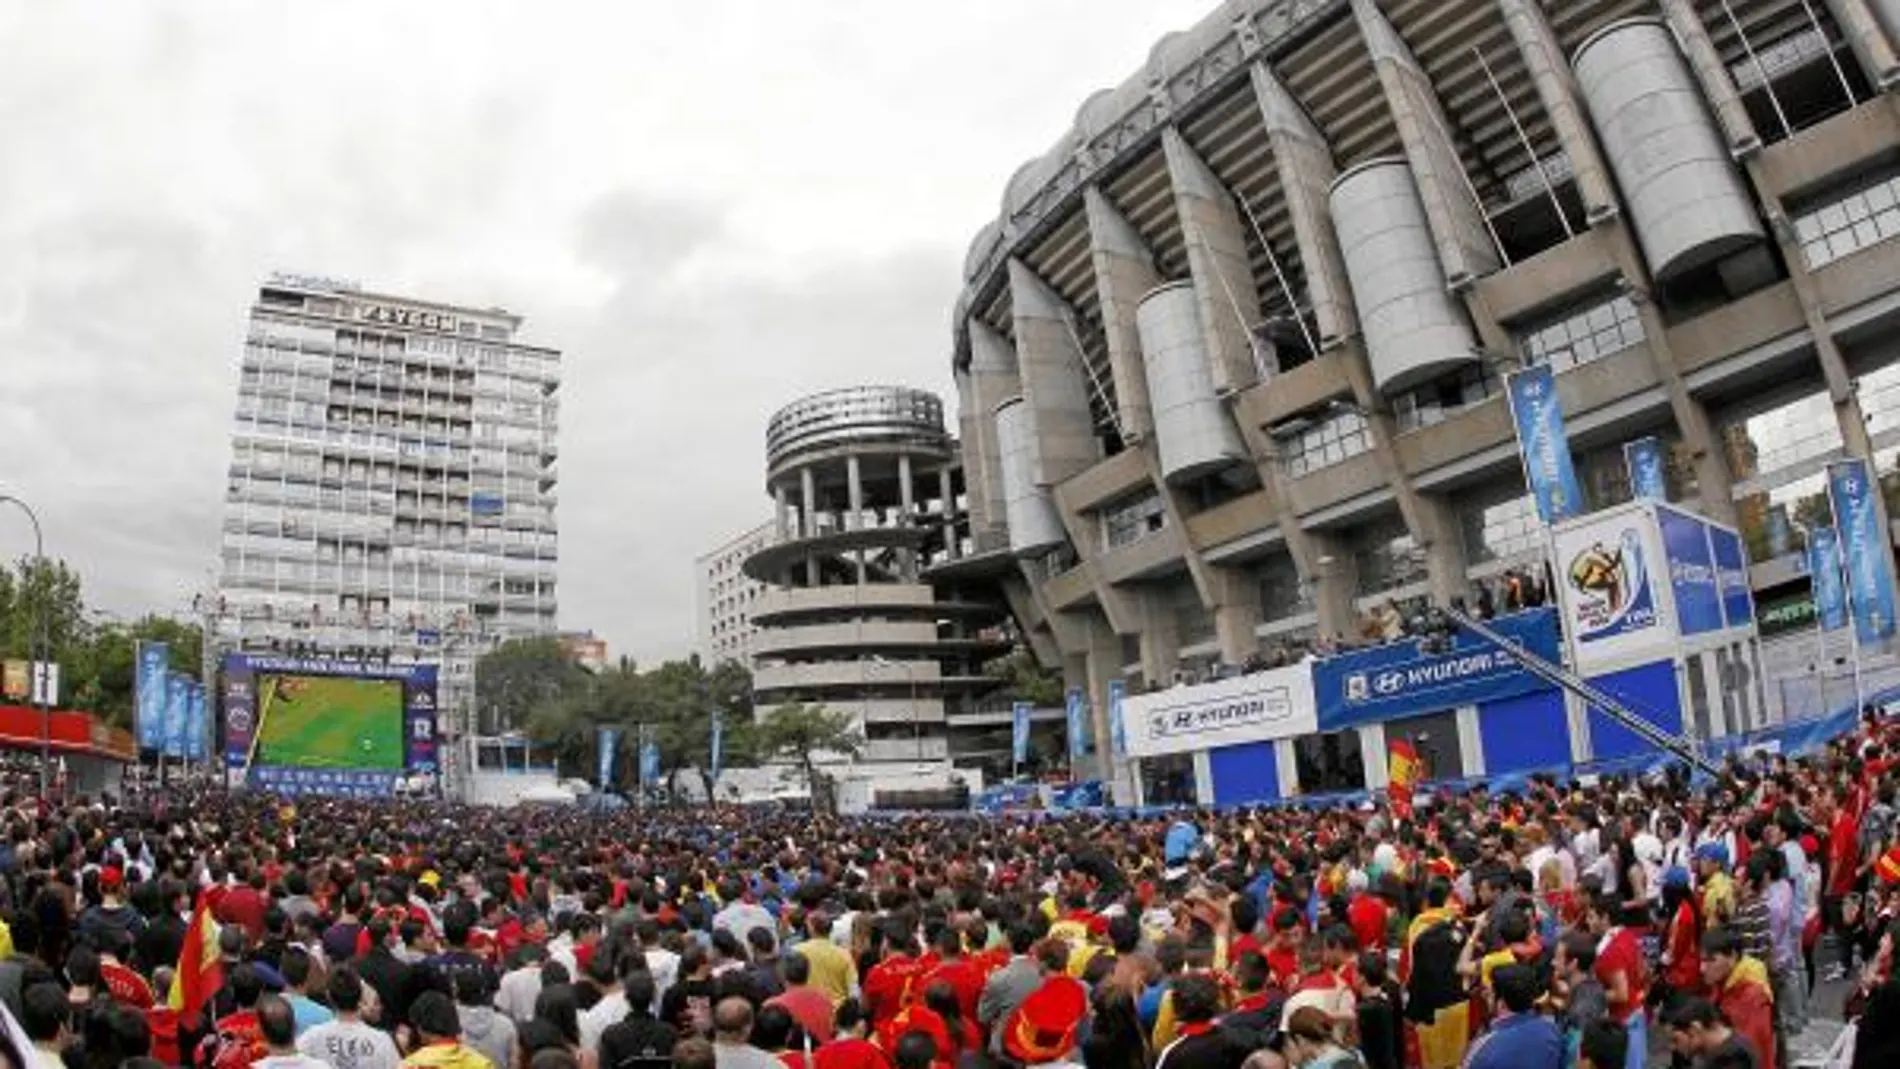 El altercado tuvo lugar cerca del Bernabéu, donde se instalaron pantallas para seguir los partidos del Mundial